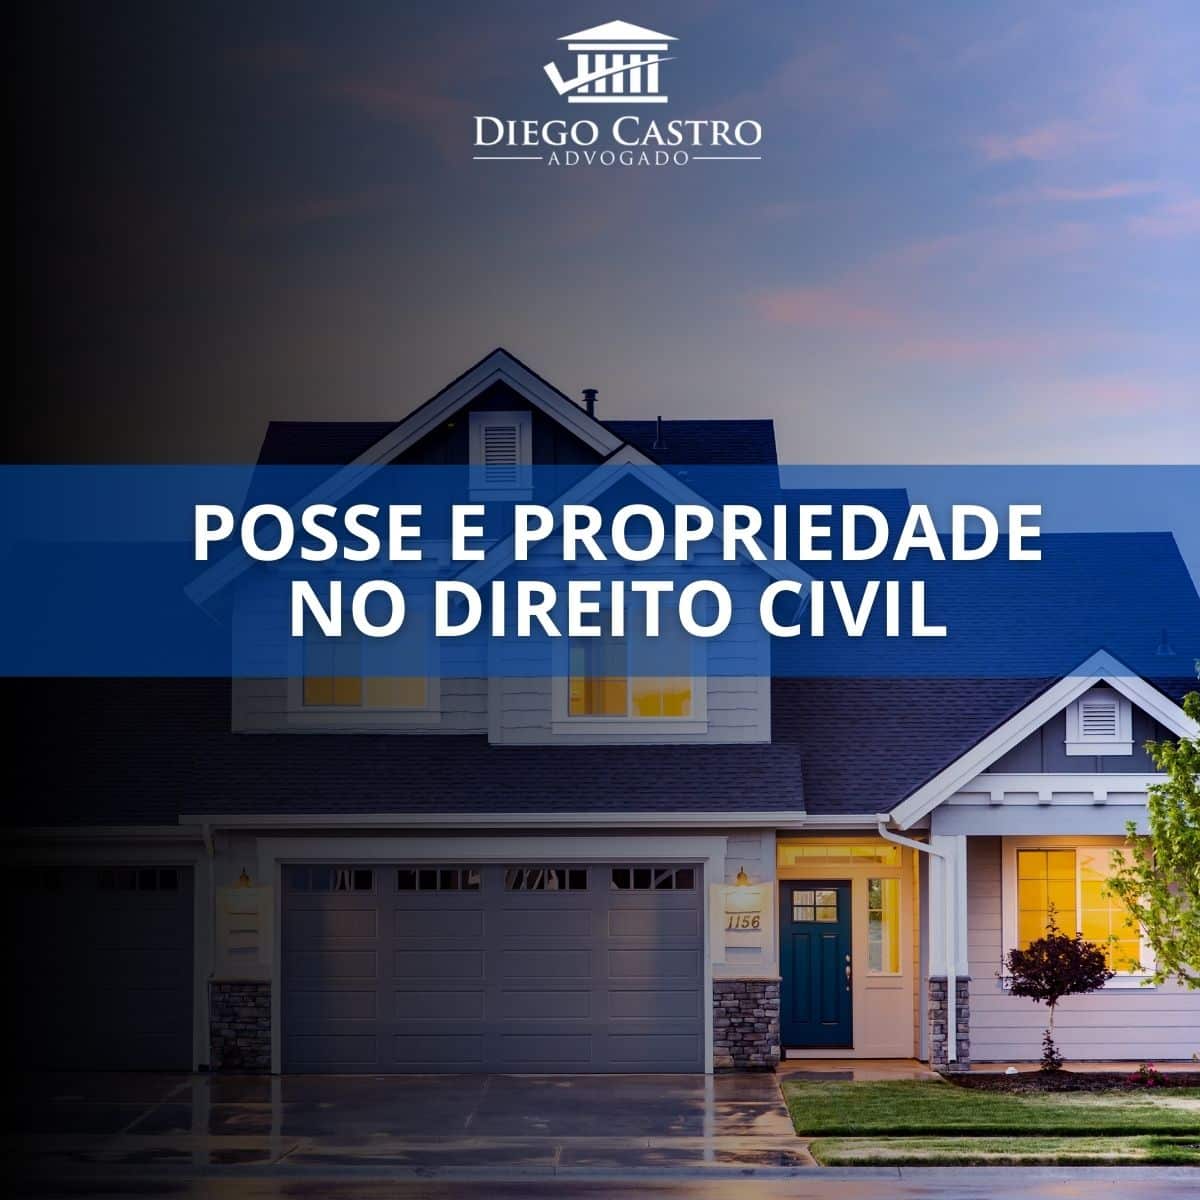 casa ao fundo com o titulo posse e propriedade no direito civil